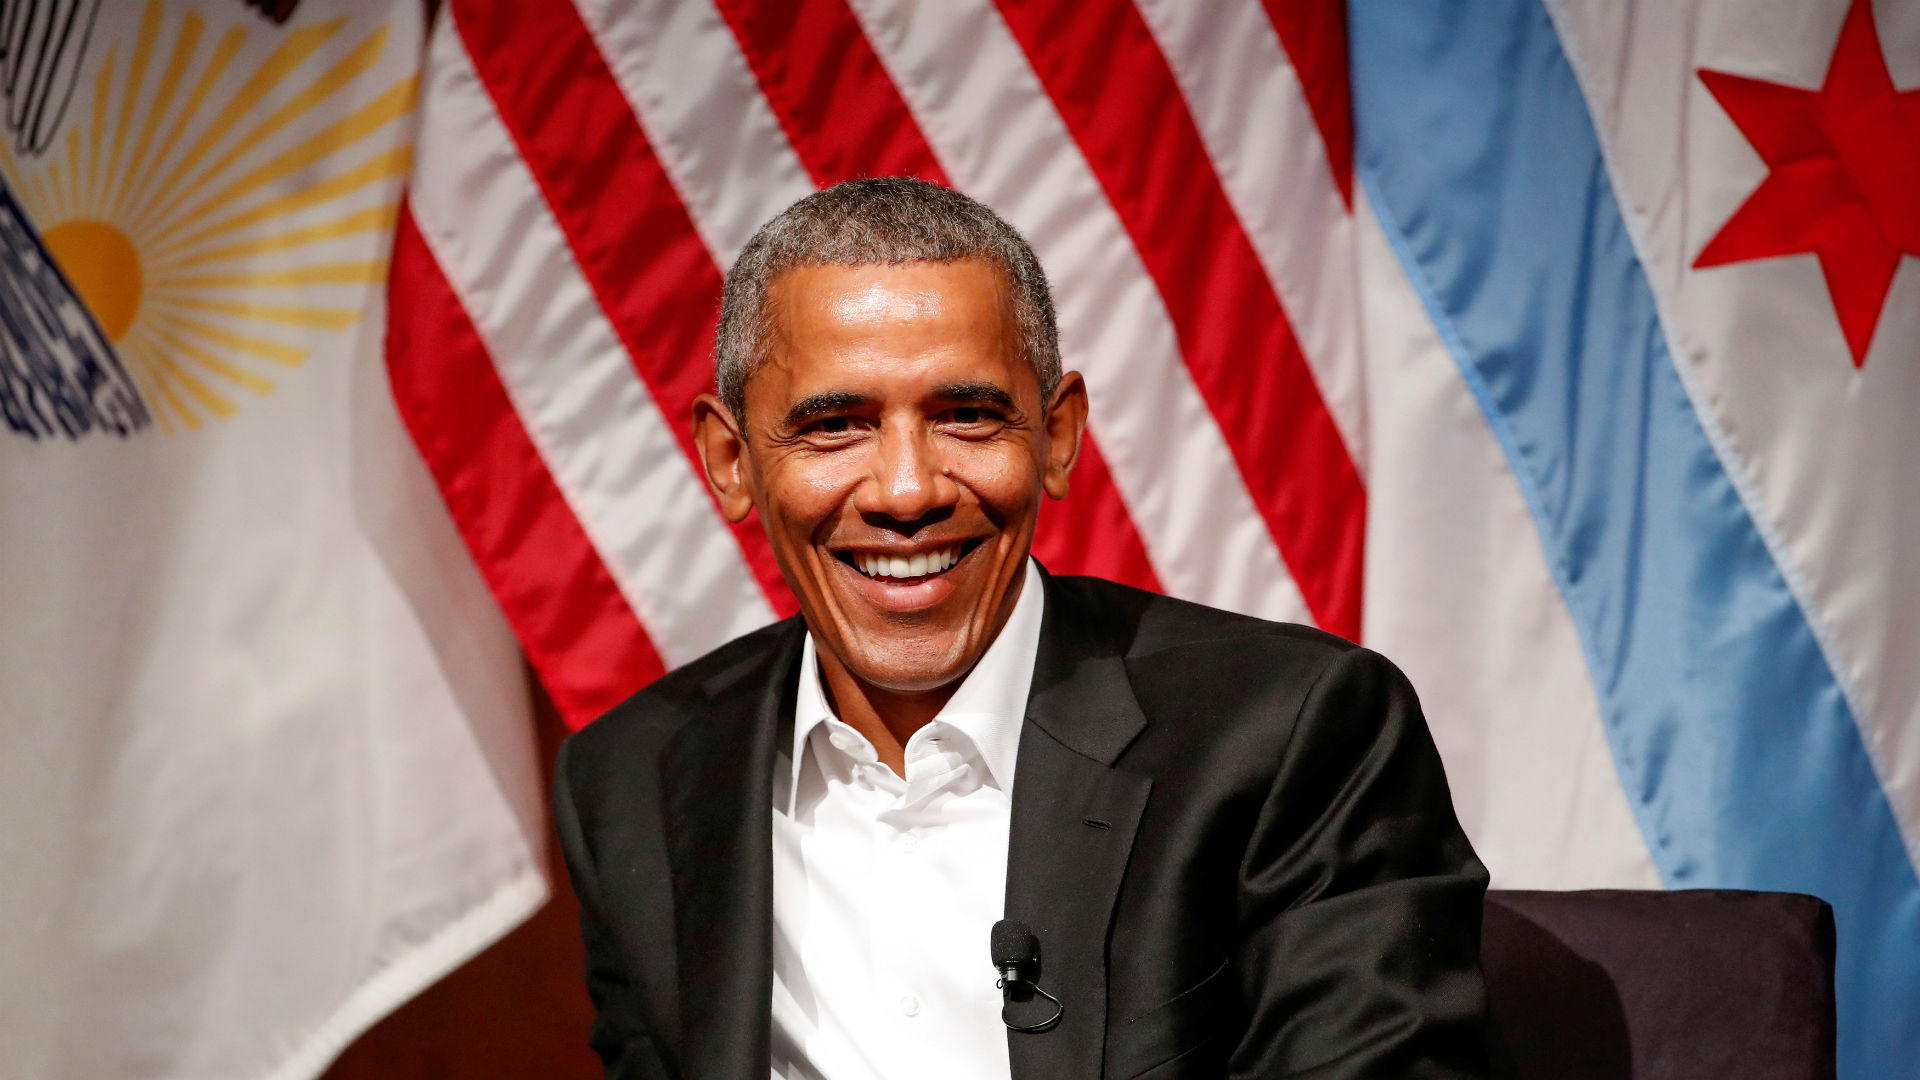 Obama reaparece y con una nueva misión: implicar a los jóvenes en la política